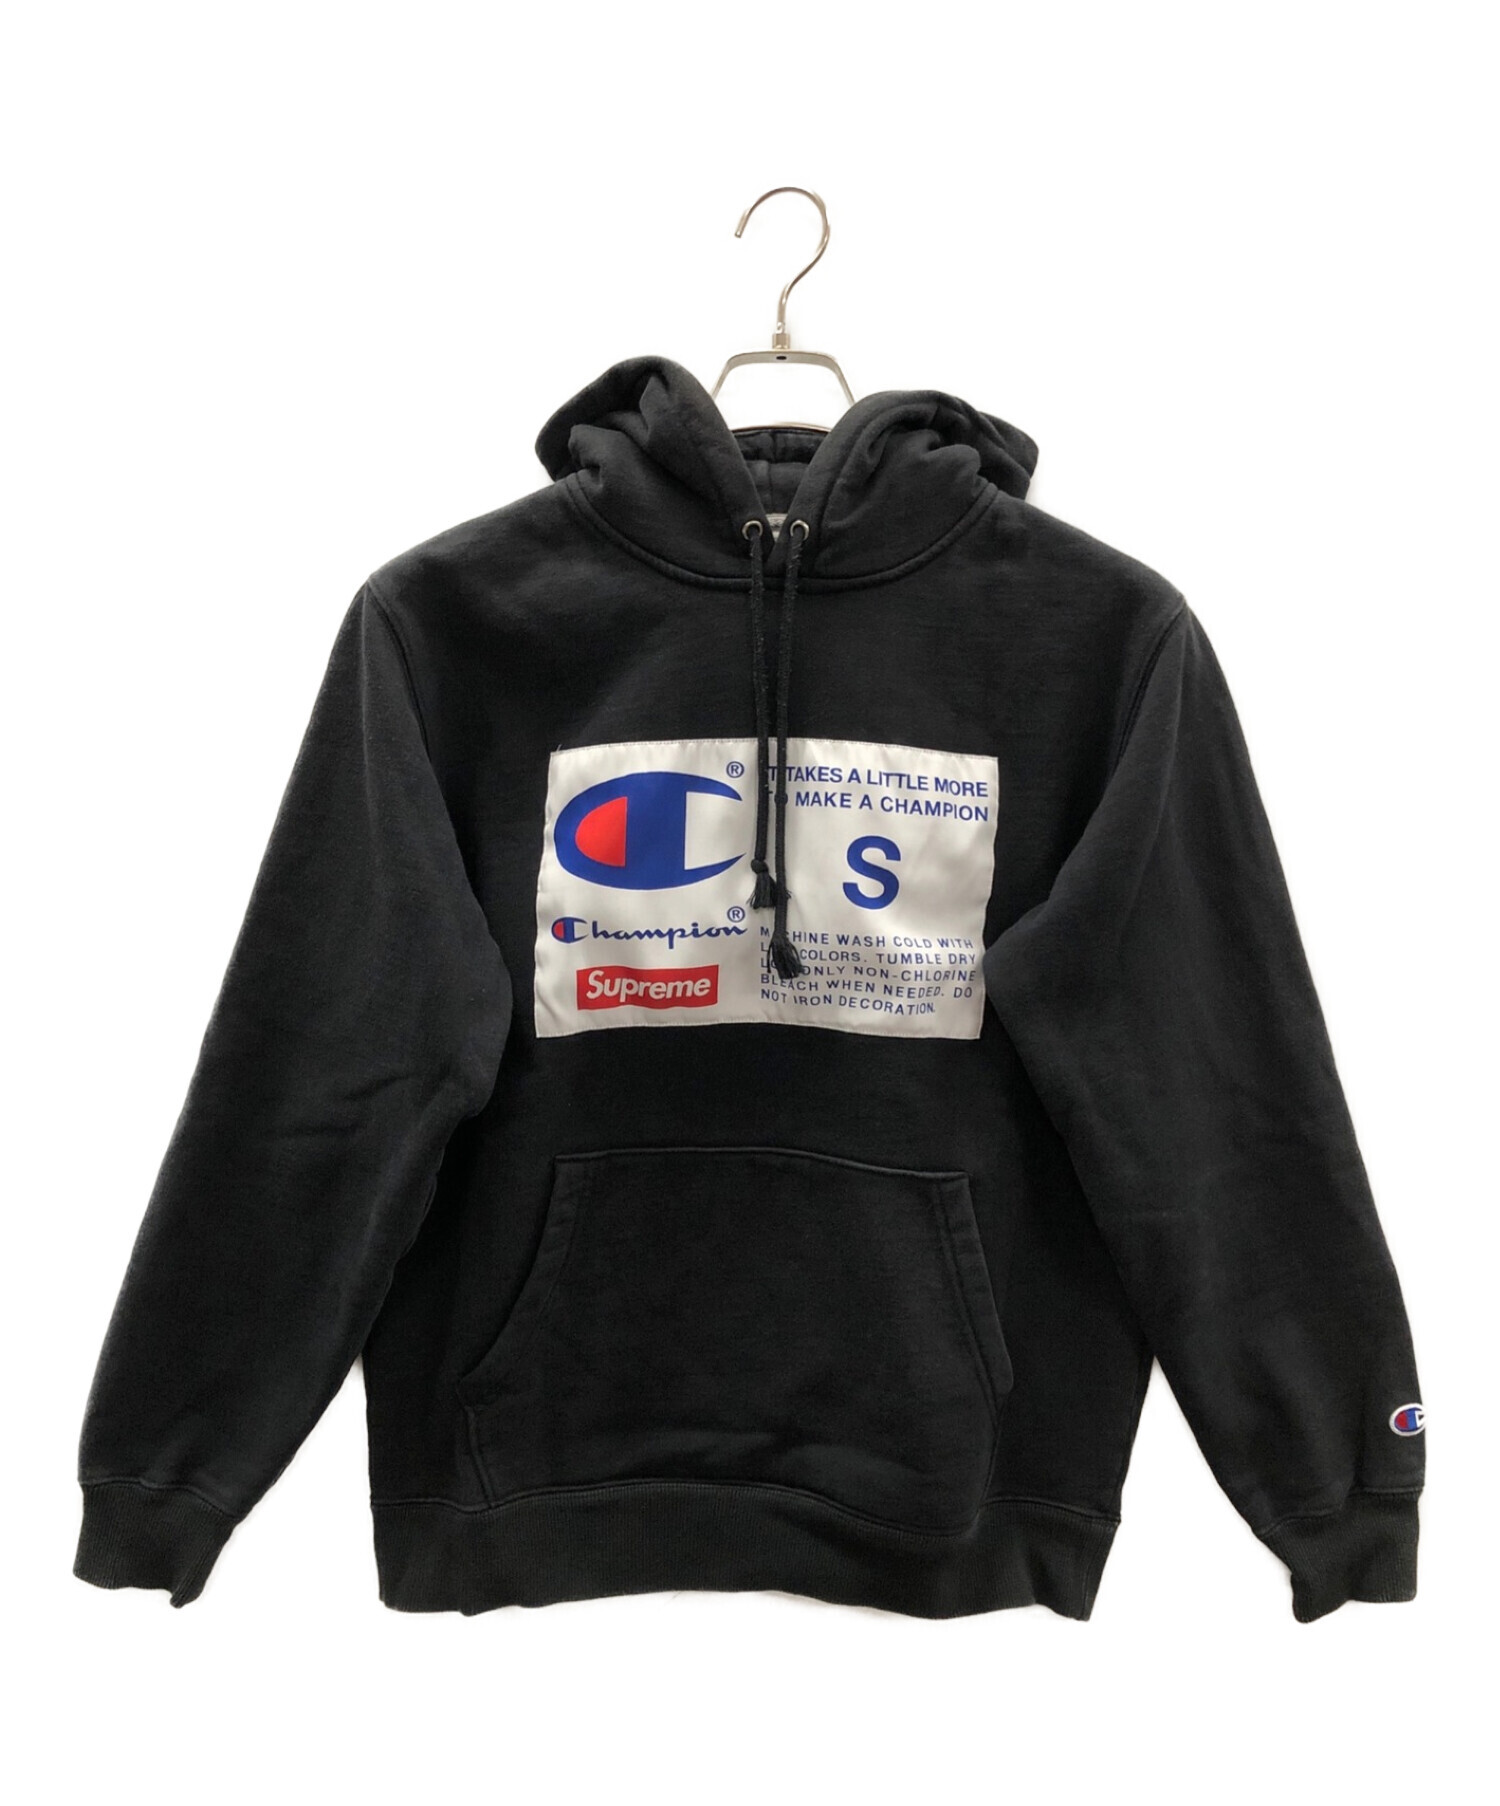 SUPREME×Champion (シュプリーム×チャンピオン) 18AW Label Hooded Sweatshirt ブラック サイズ:S